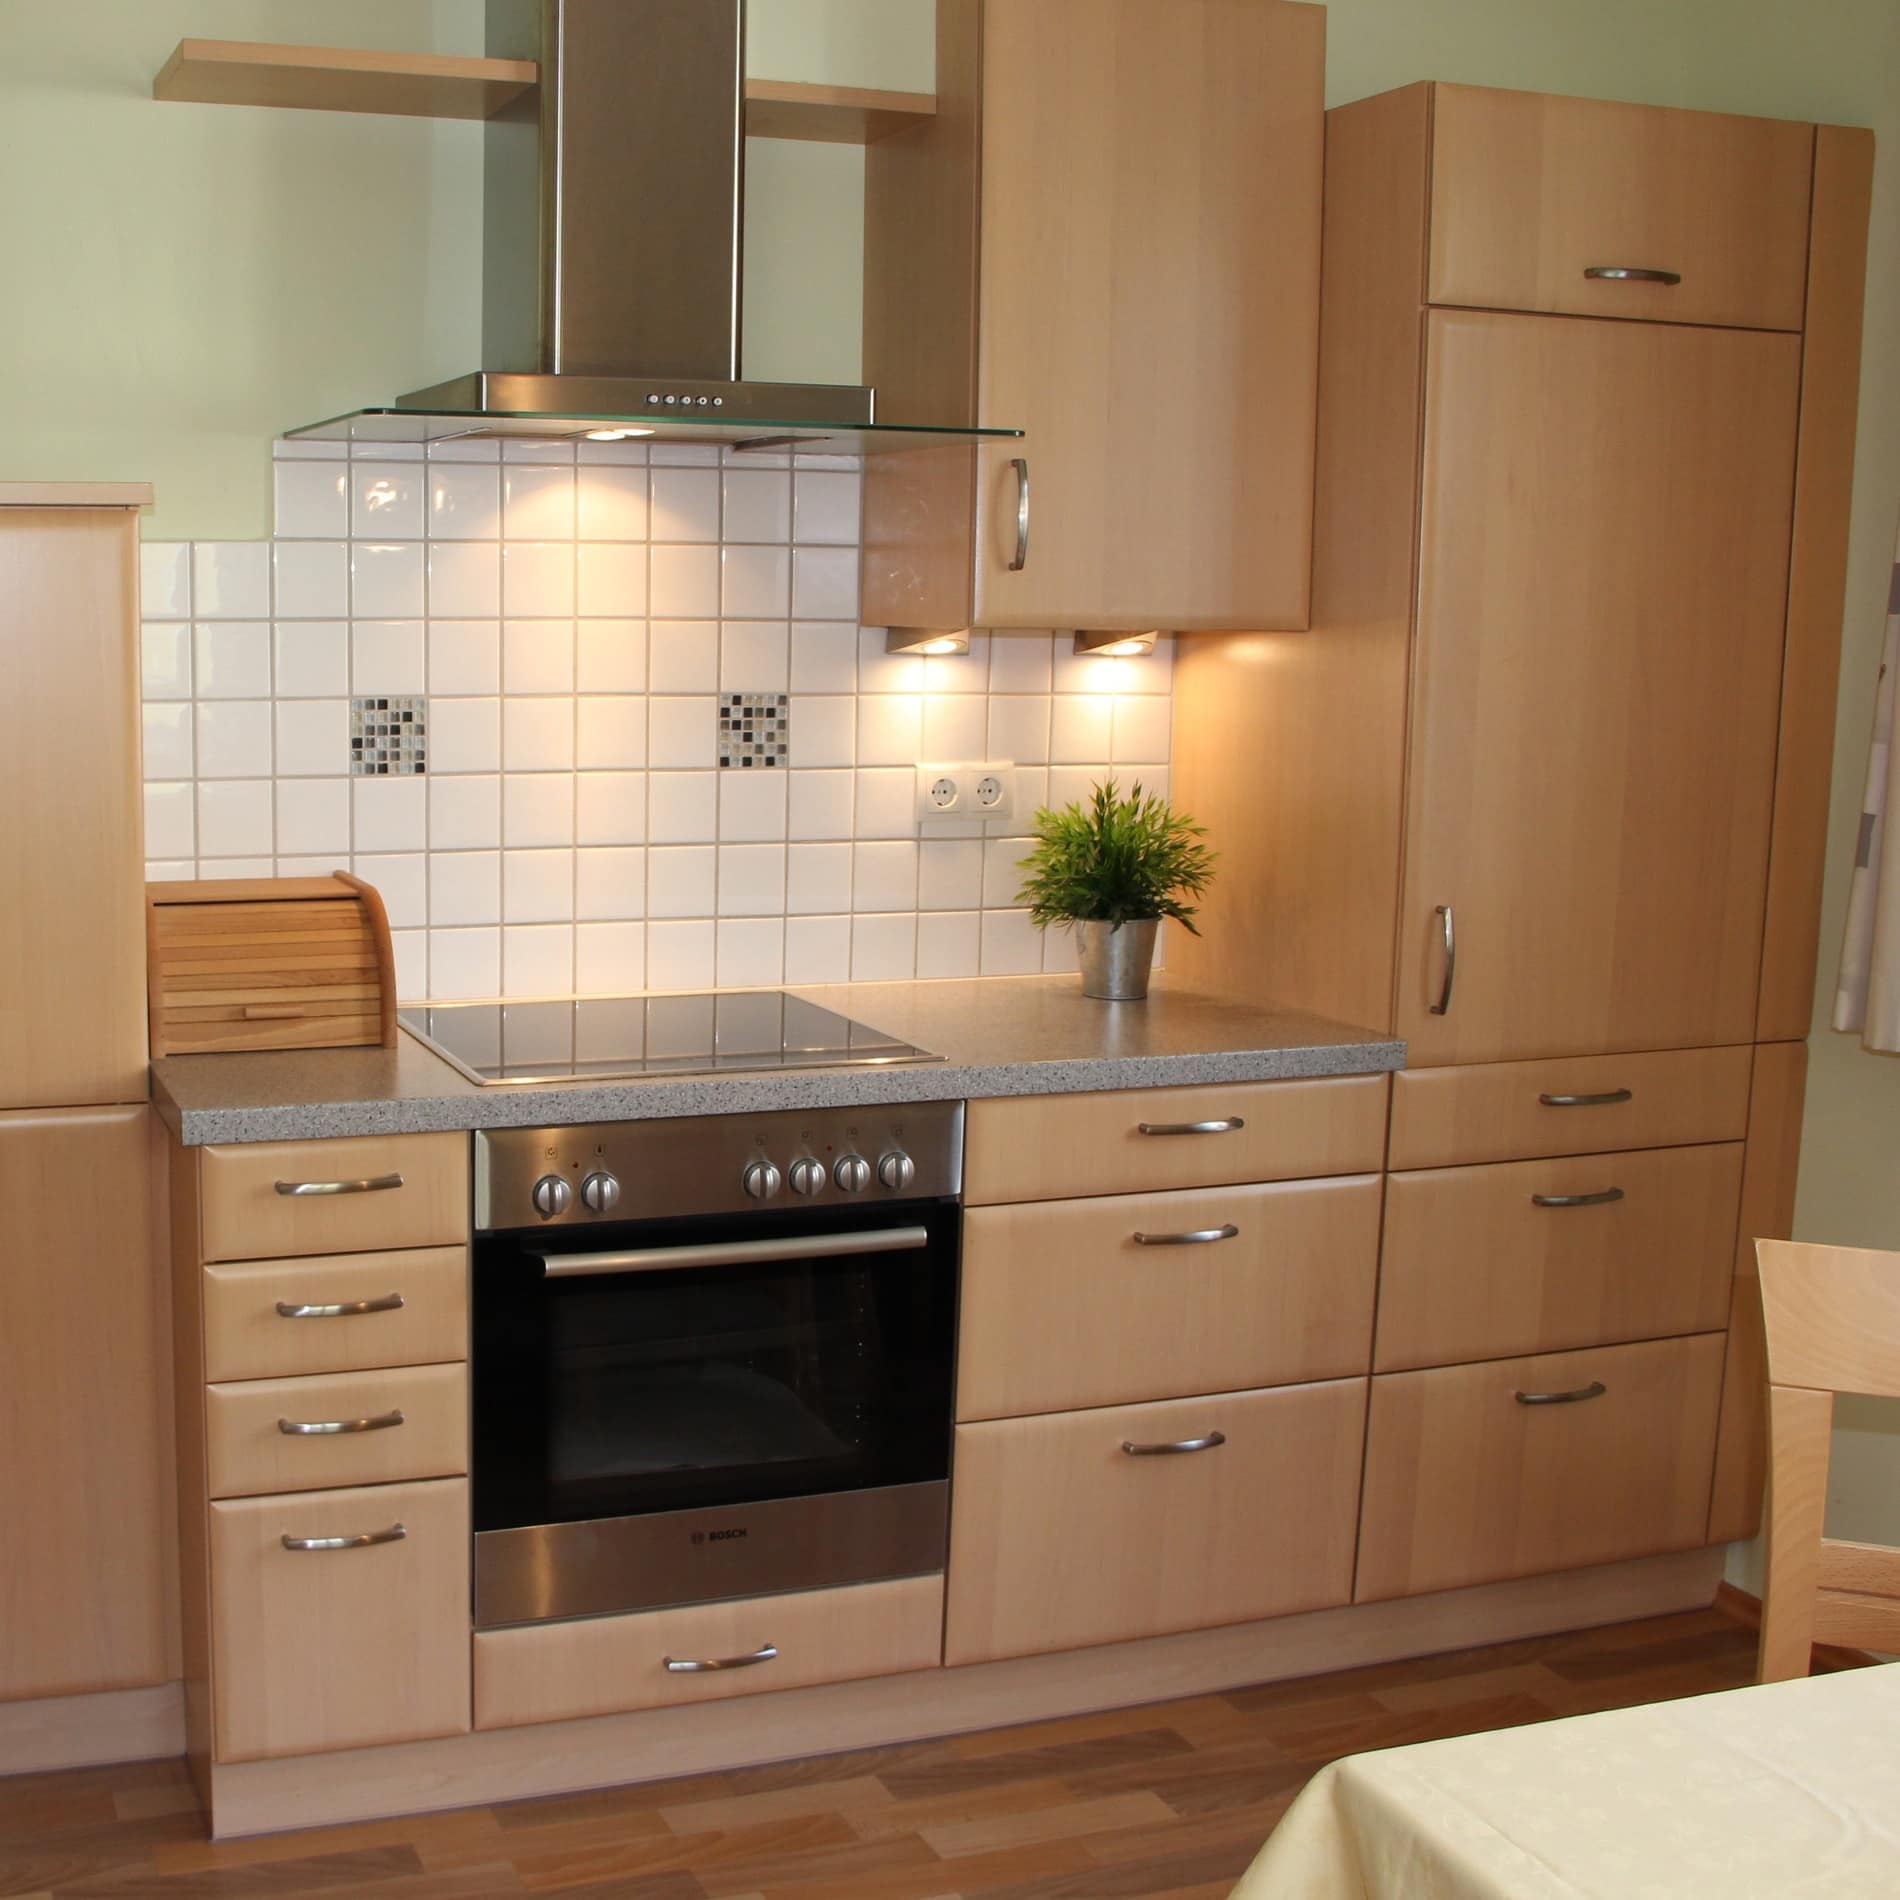 Moderne Küche einer Ferienwohnung in der Salzburger Innenstadt mit Mobiliar in hellem Holz